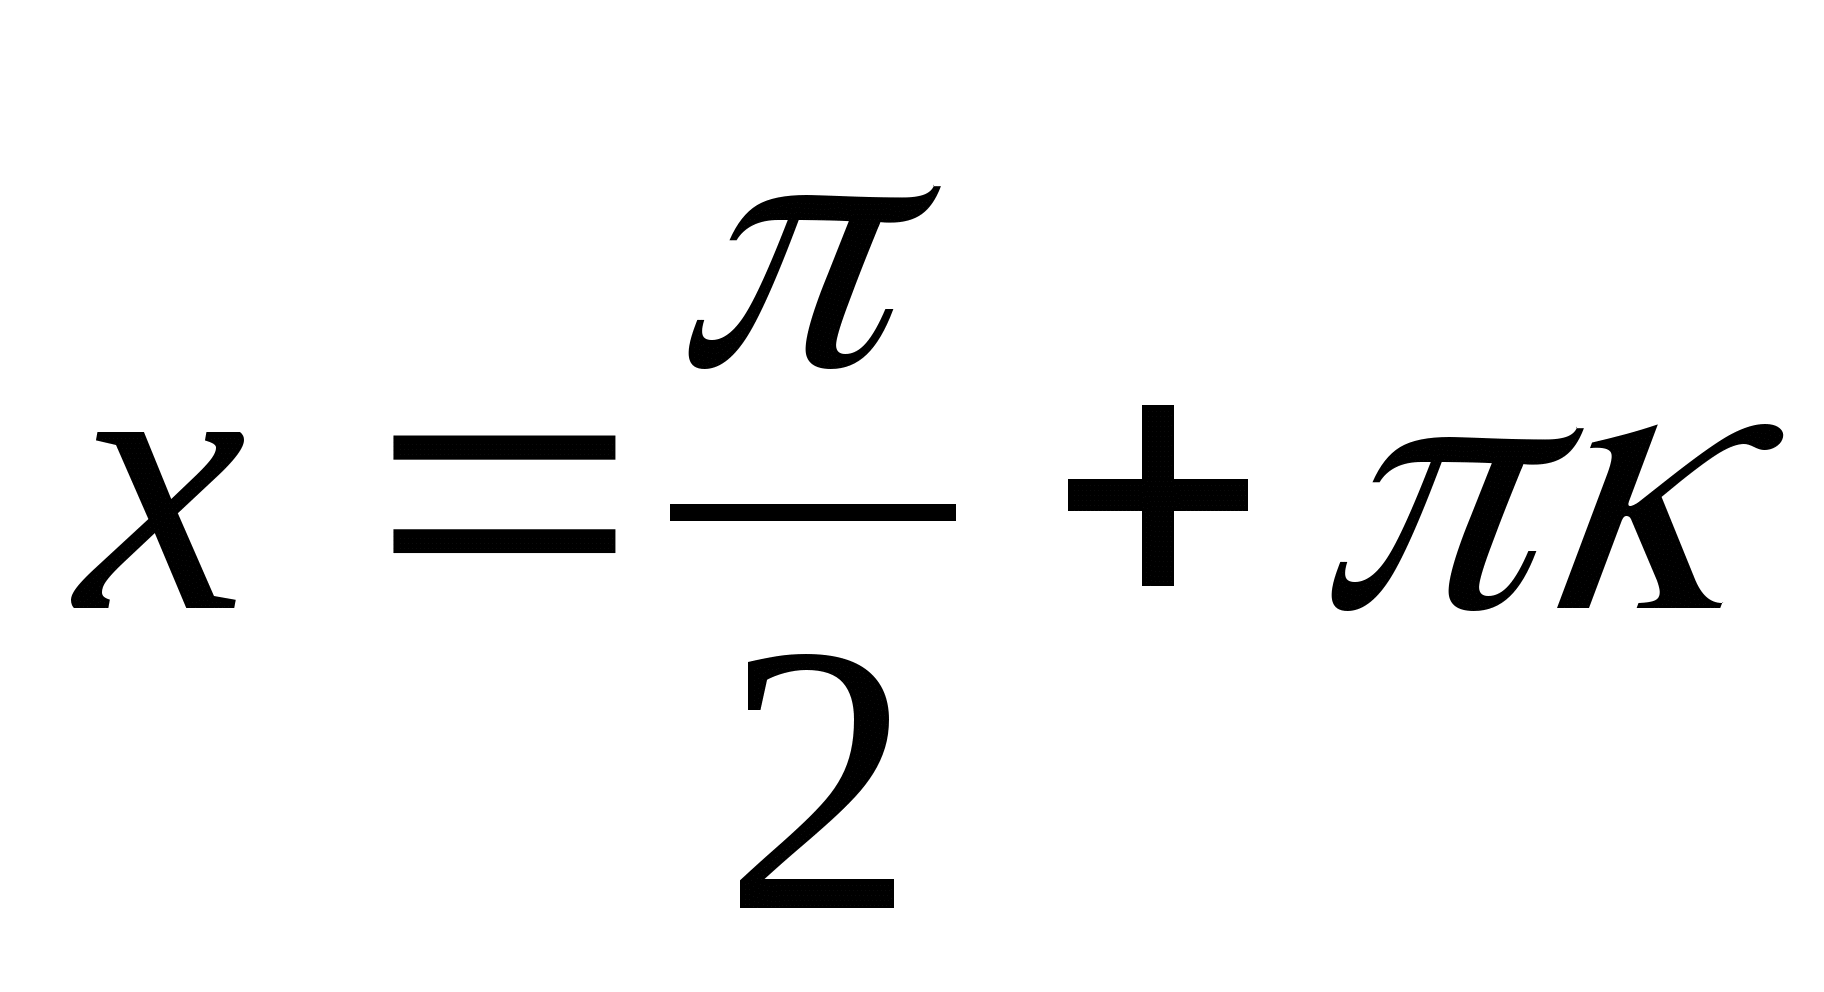 Презентация по математике Решение простейших тригонометрических уравнений